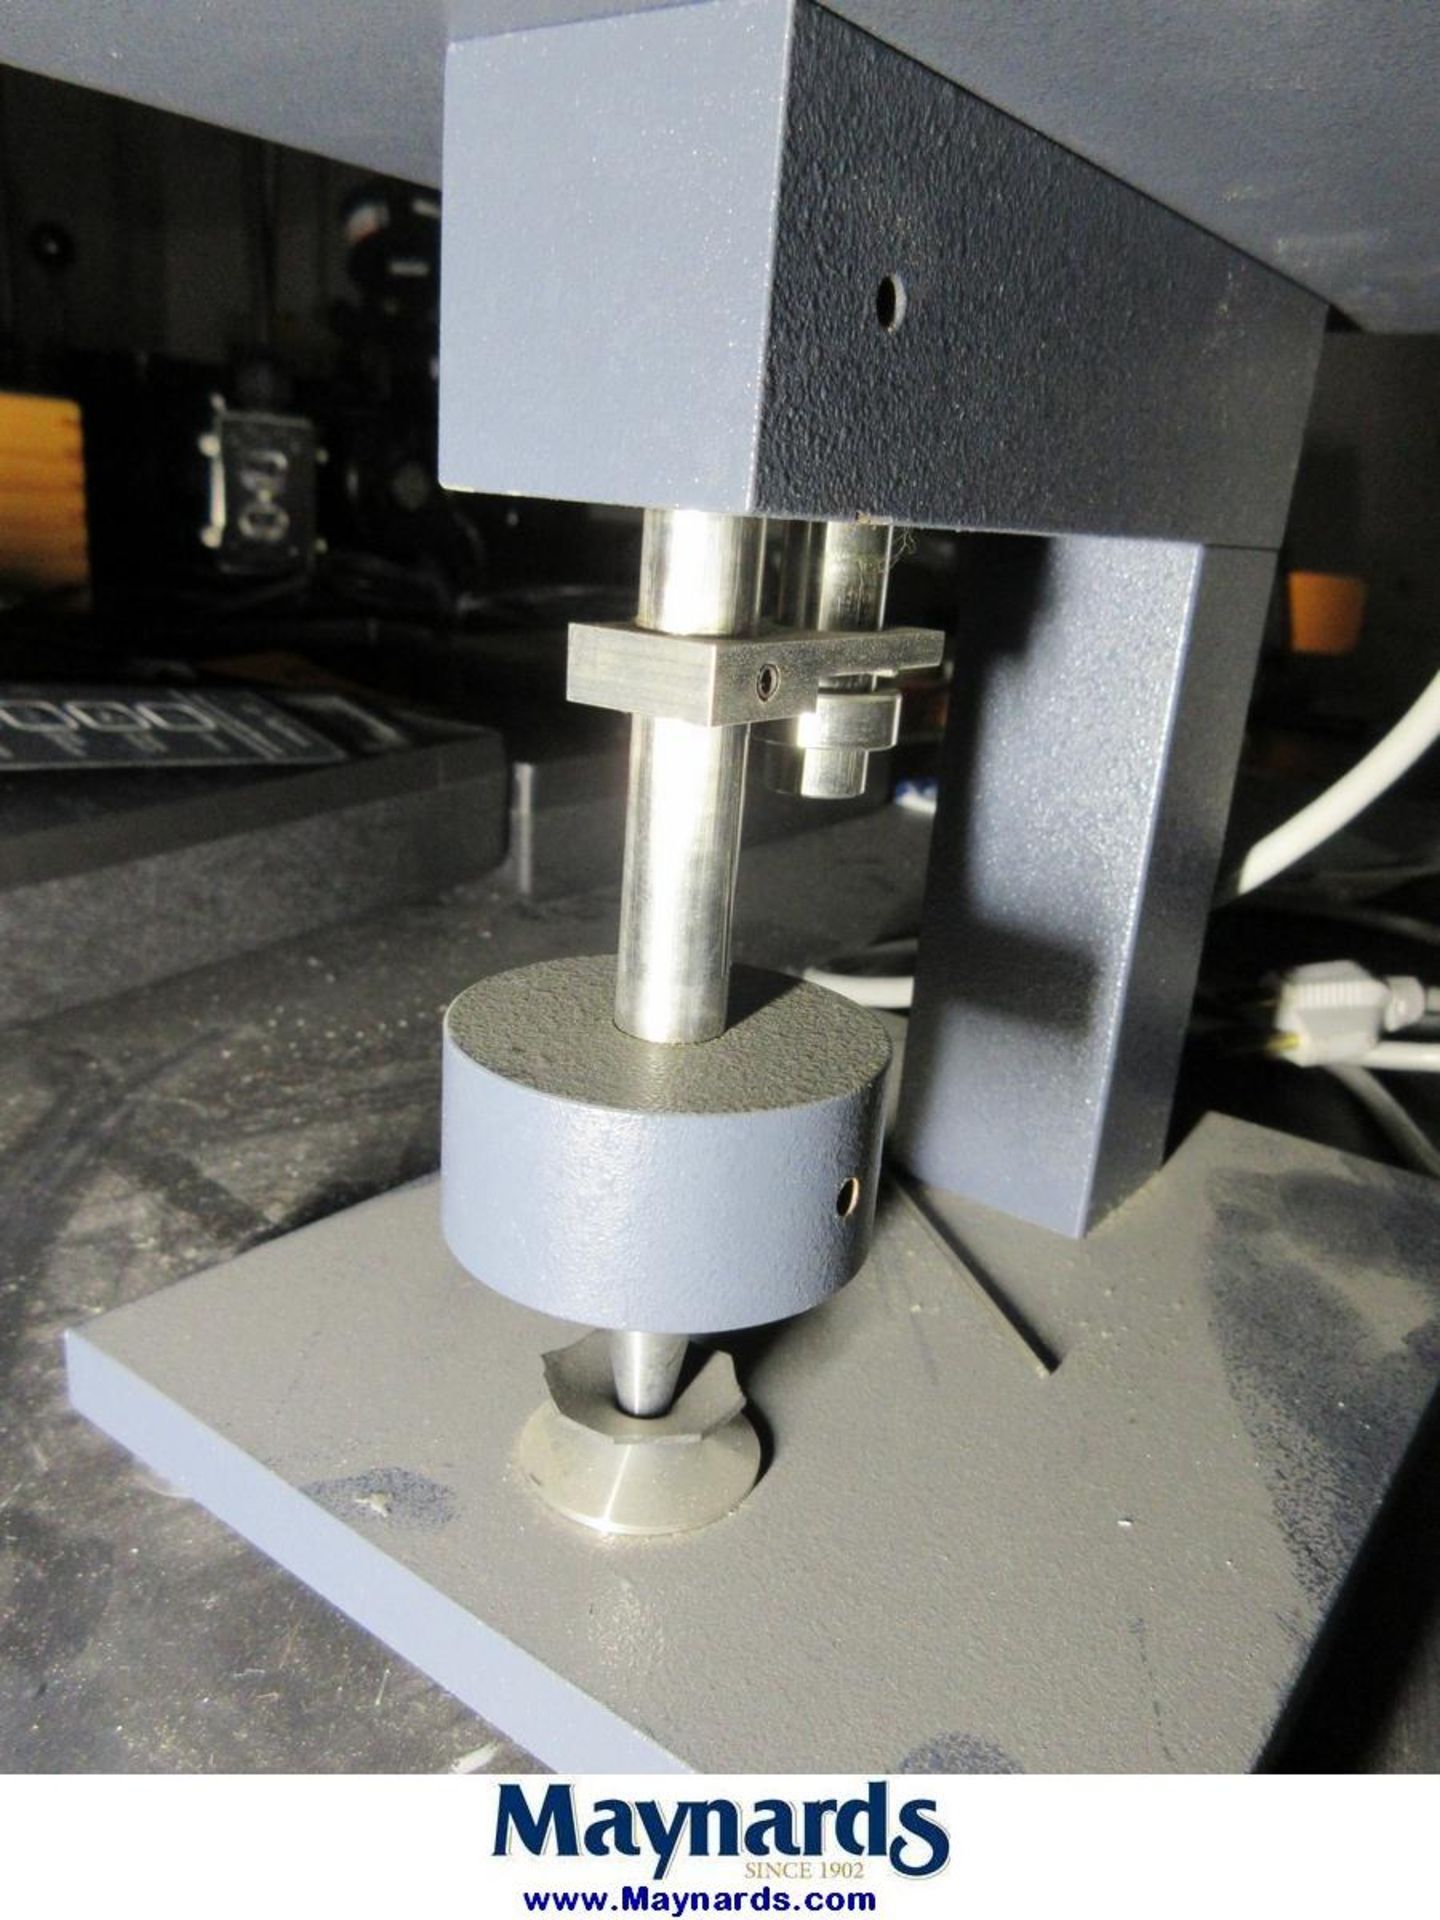 Testing Machines Inc 49-70-01-0002 Digital Micrometer - Image 4 of 5